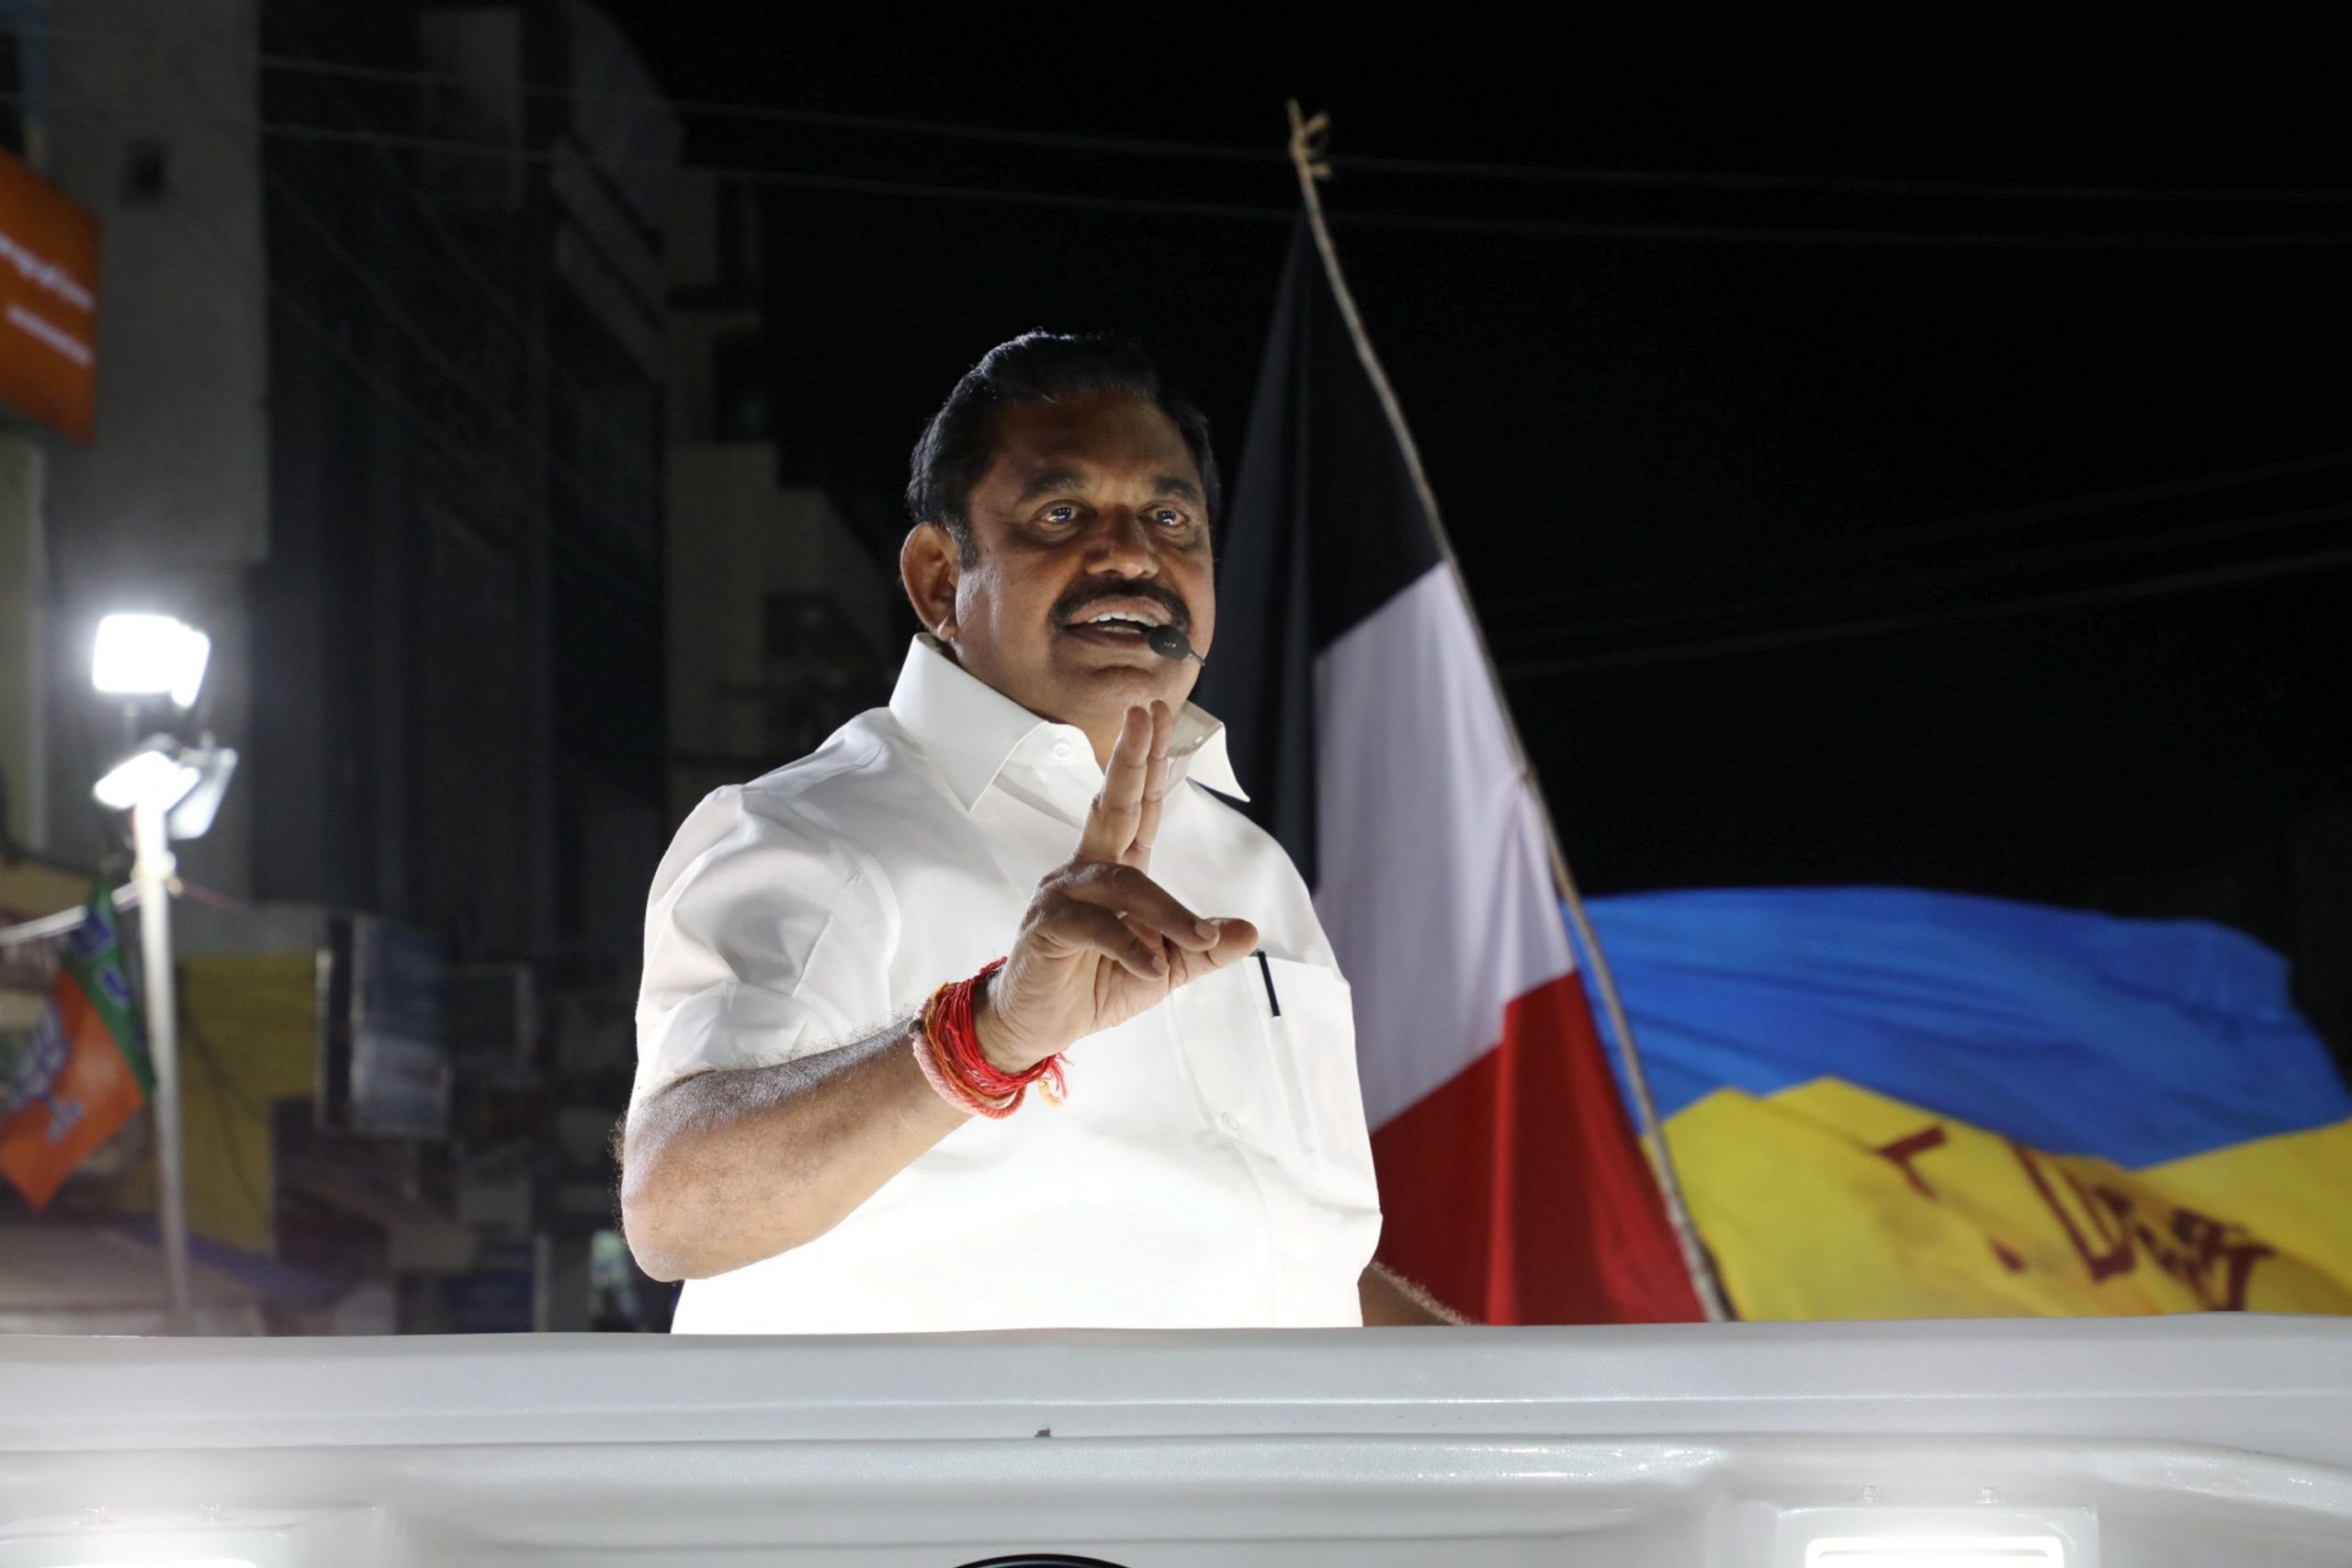 Perundurai constituency elected AIADMK candidate in 2016